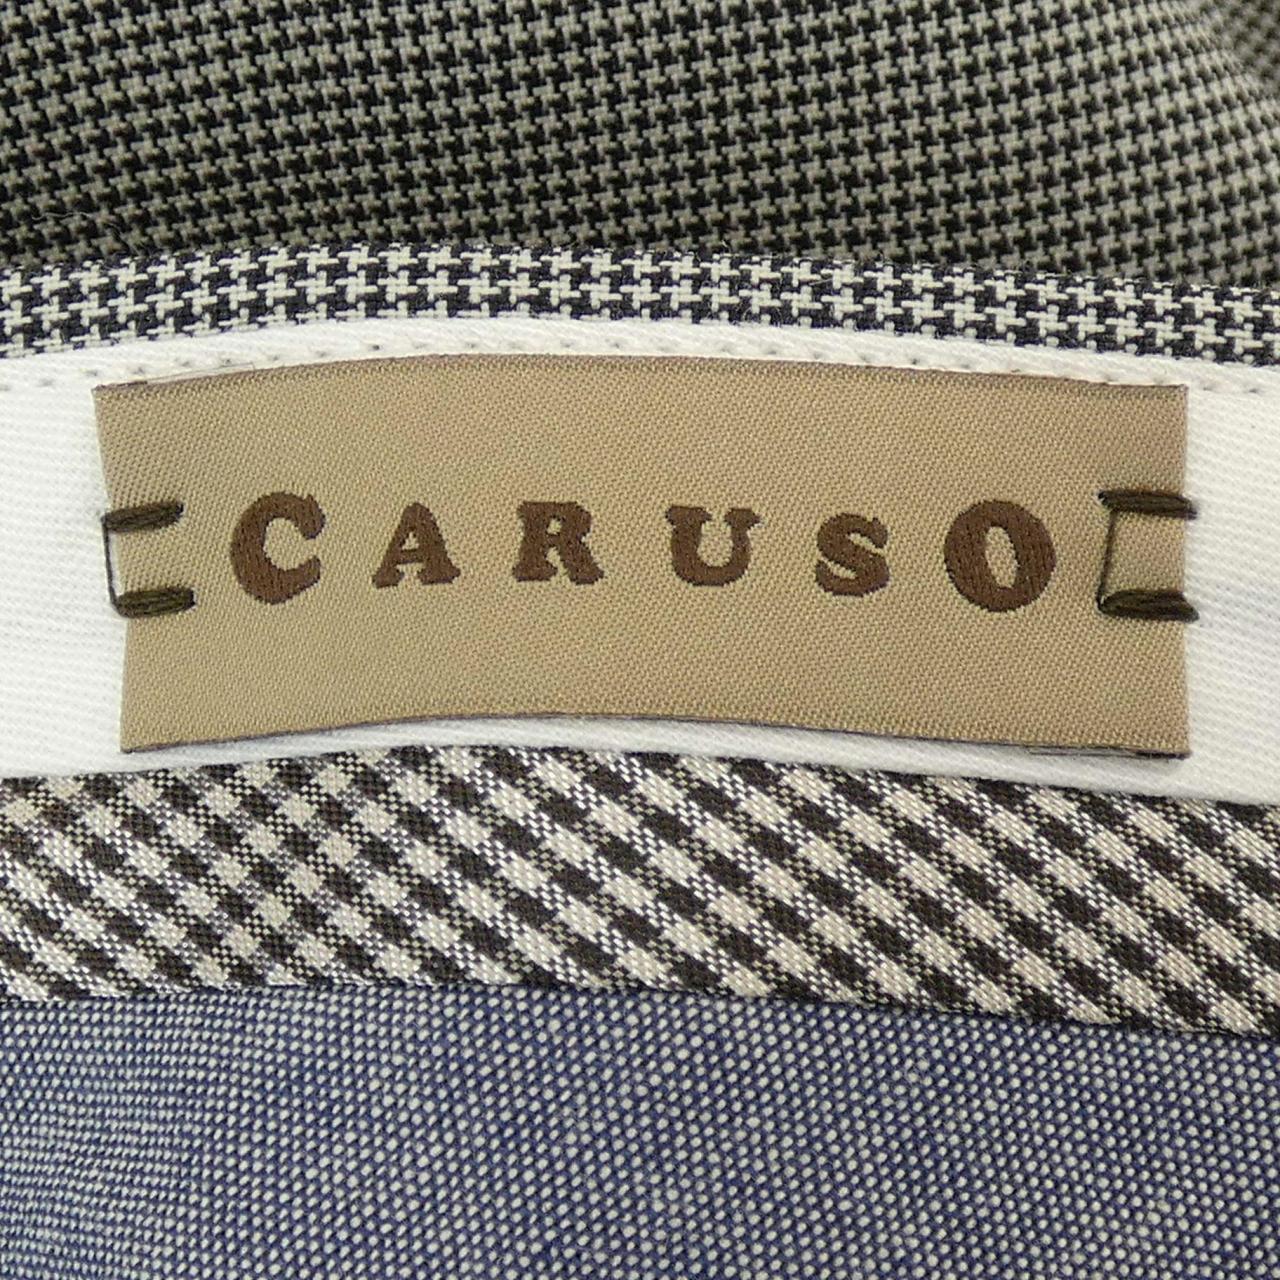 卡魯索CARUSO褲